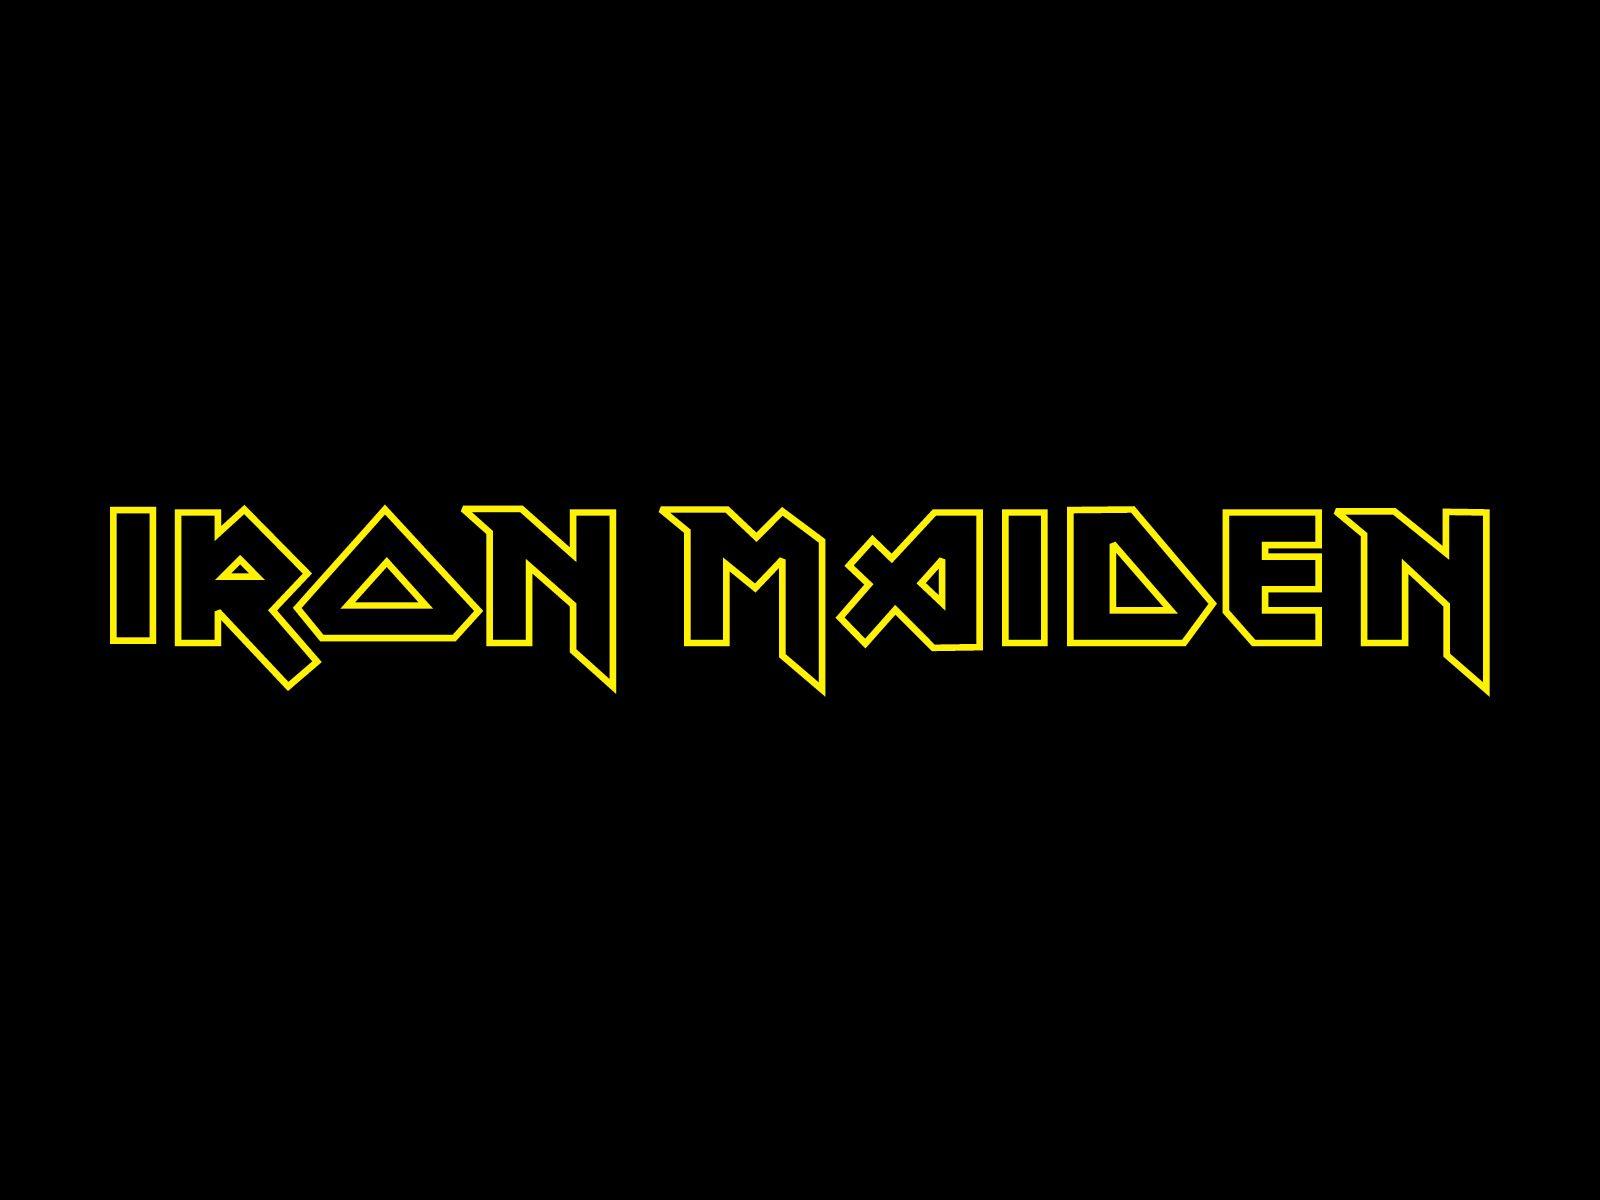 Iron Maiden band logo wallpaper. Band logos band logos, metal bands logos, punk bands logos